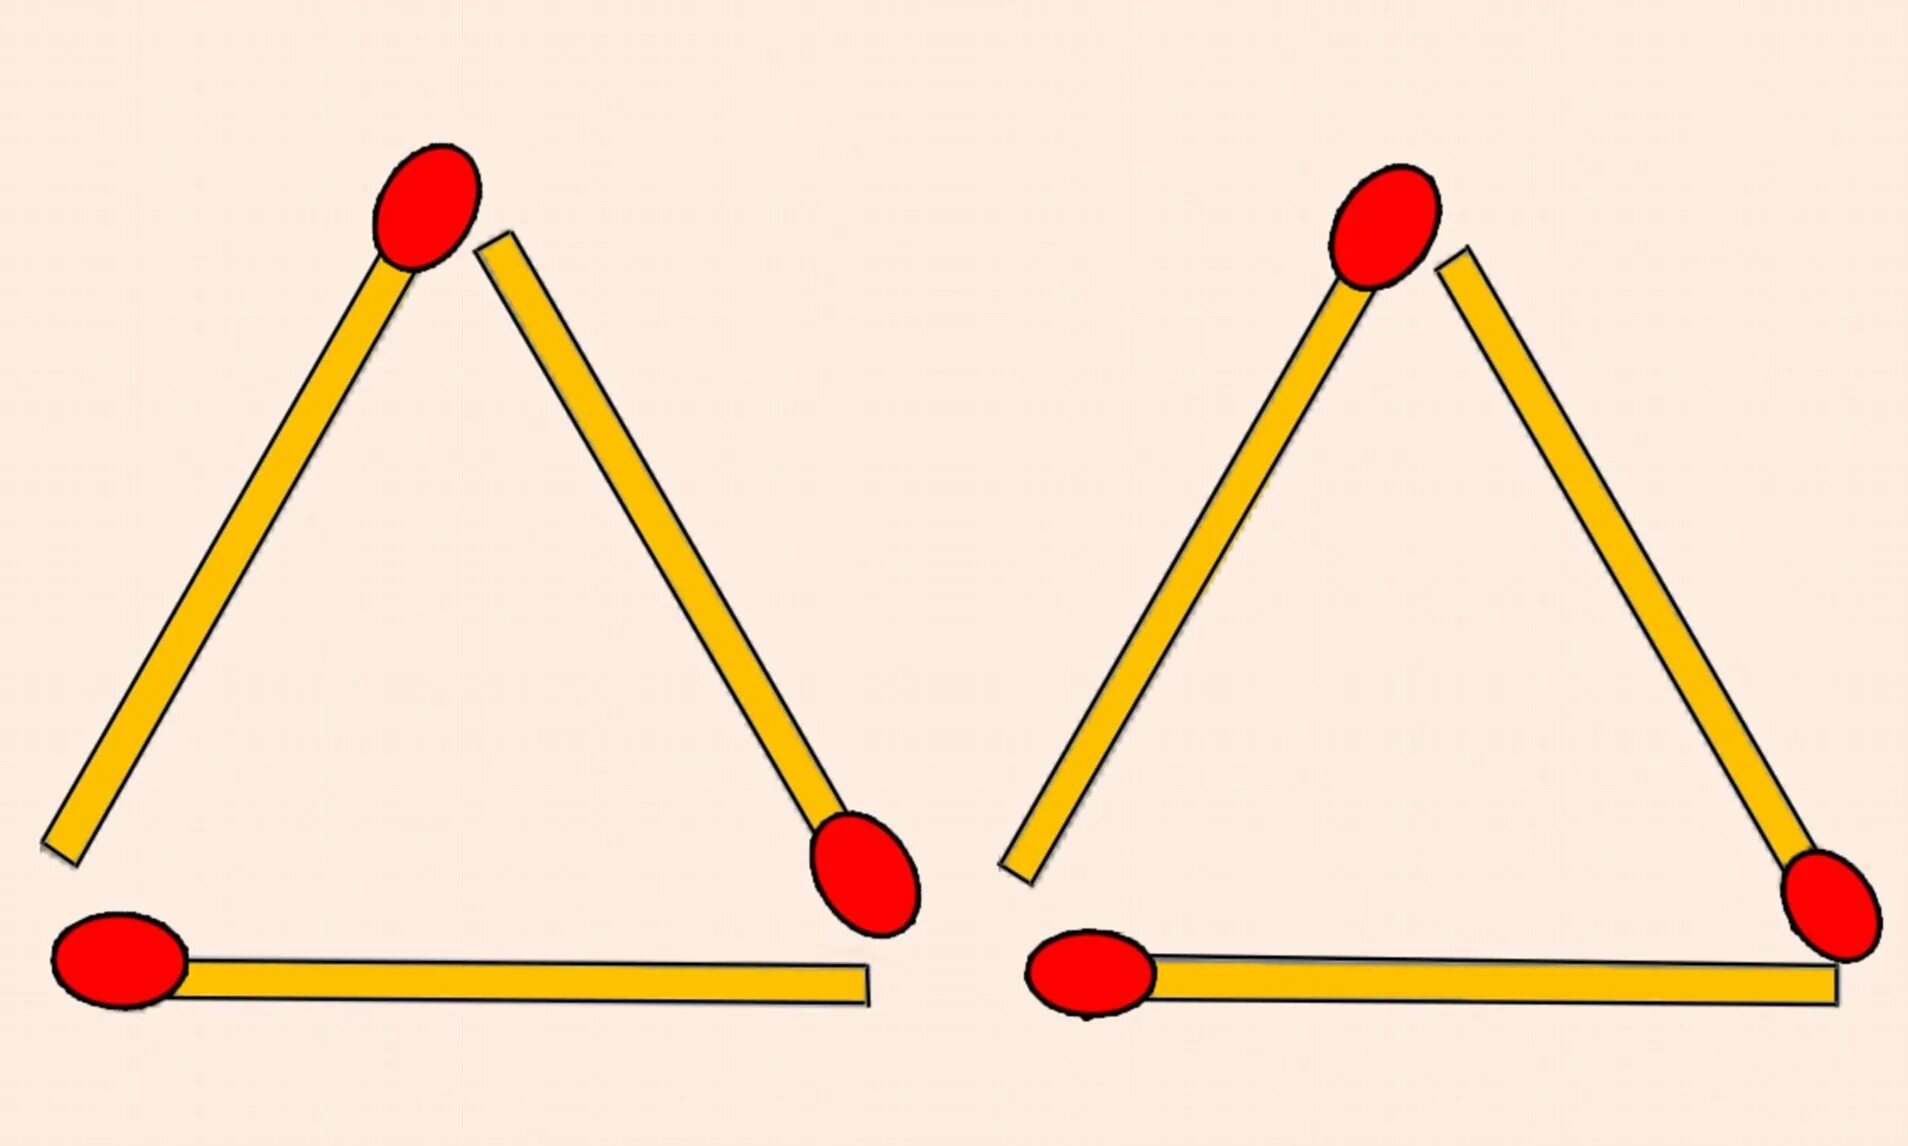 Из 6 спичек можно. Треугольник из палочек. Фигуры из палочек. Треугольник из спичек. Utjvtnhbxtcrbt abuuehs BP cgbxtr.